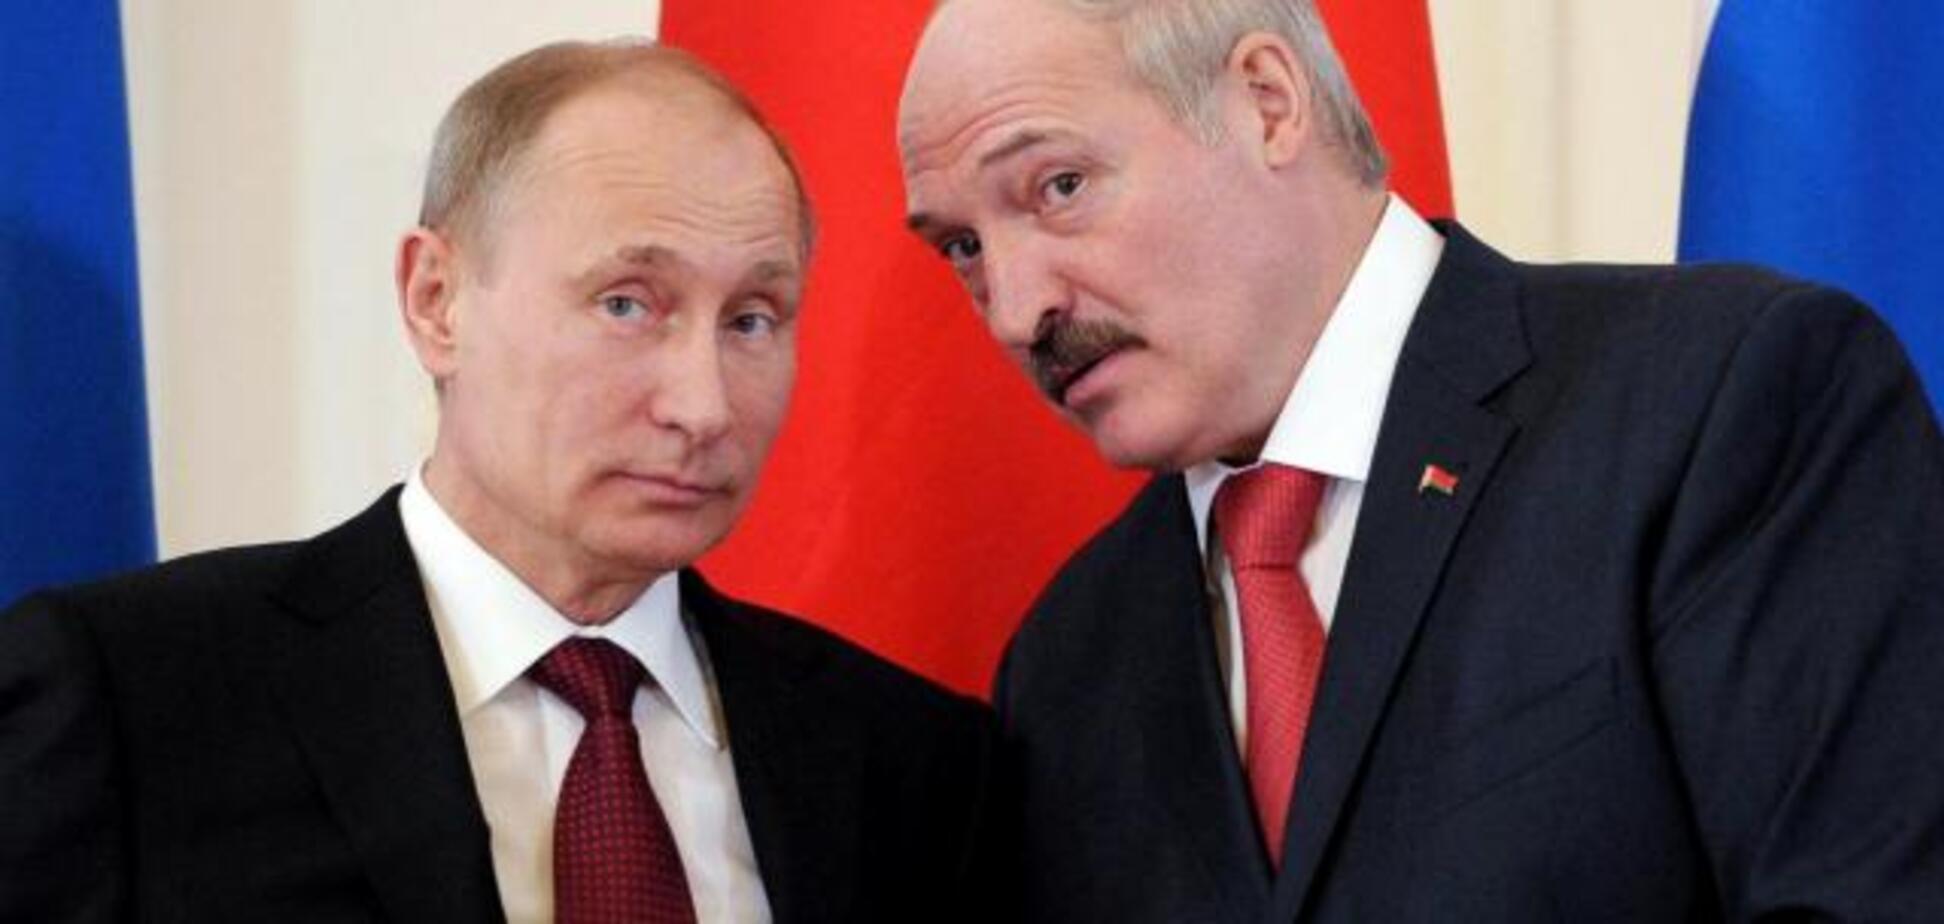 Захватывать Беларусь - дорогая и бессмысленная акция